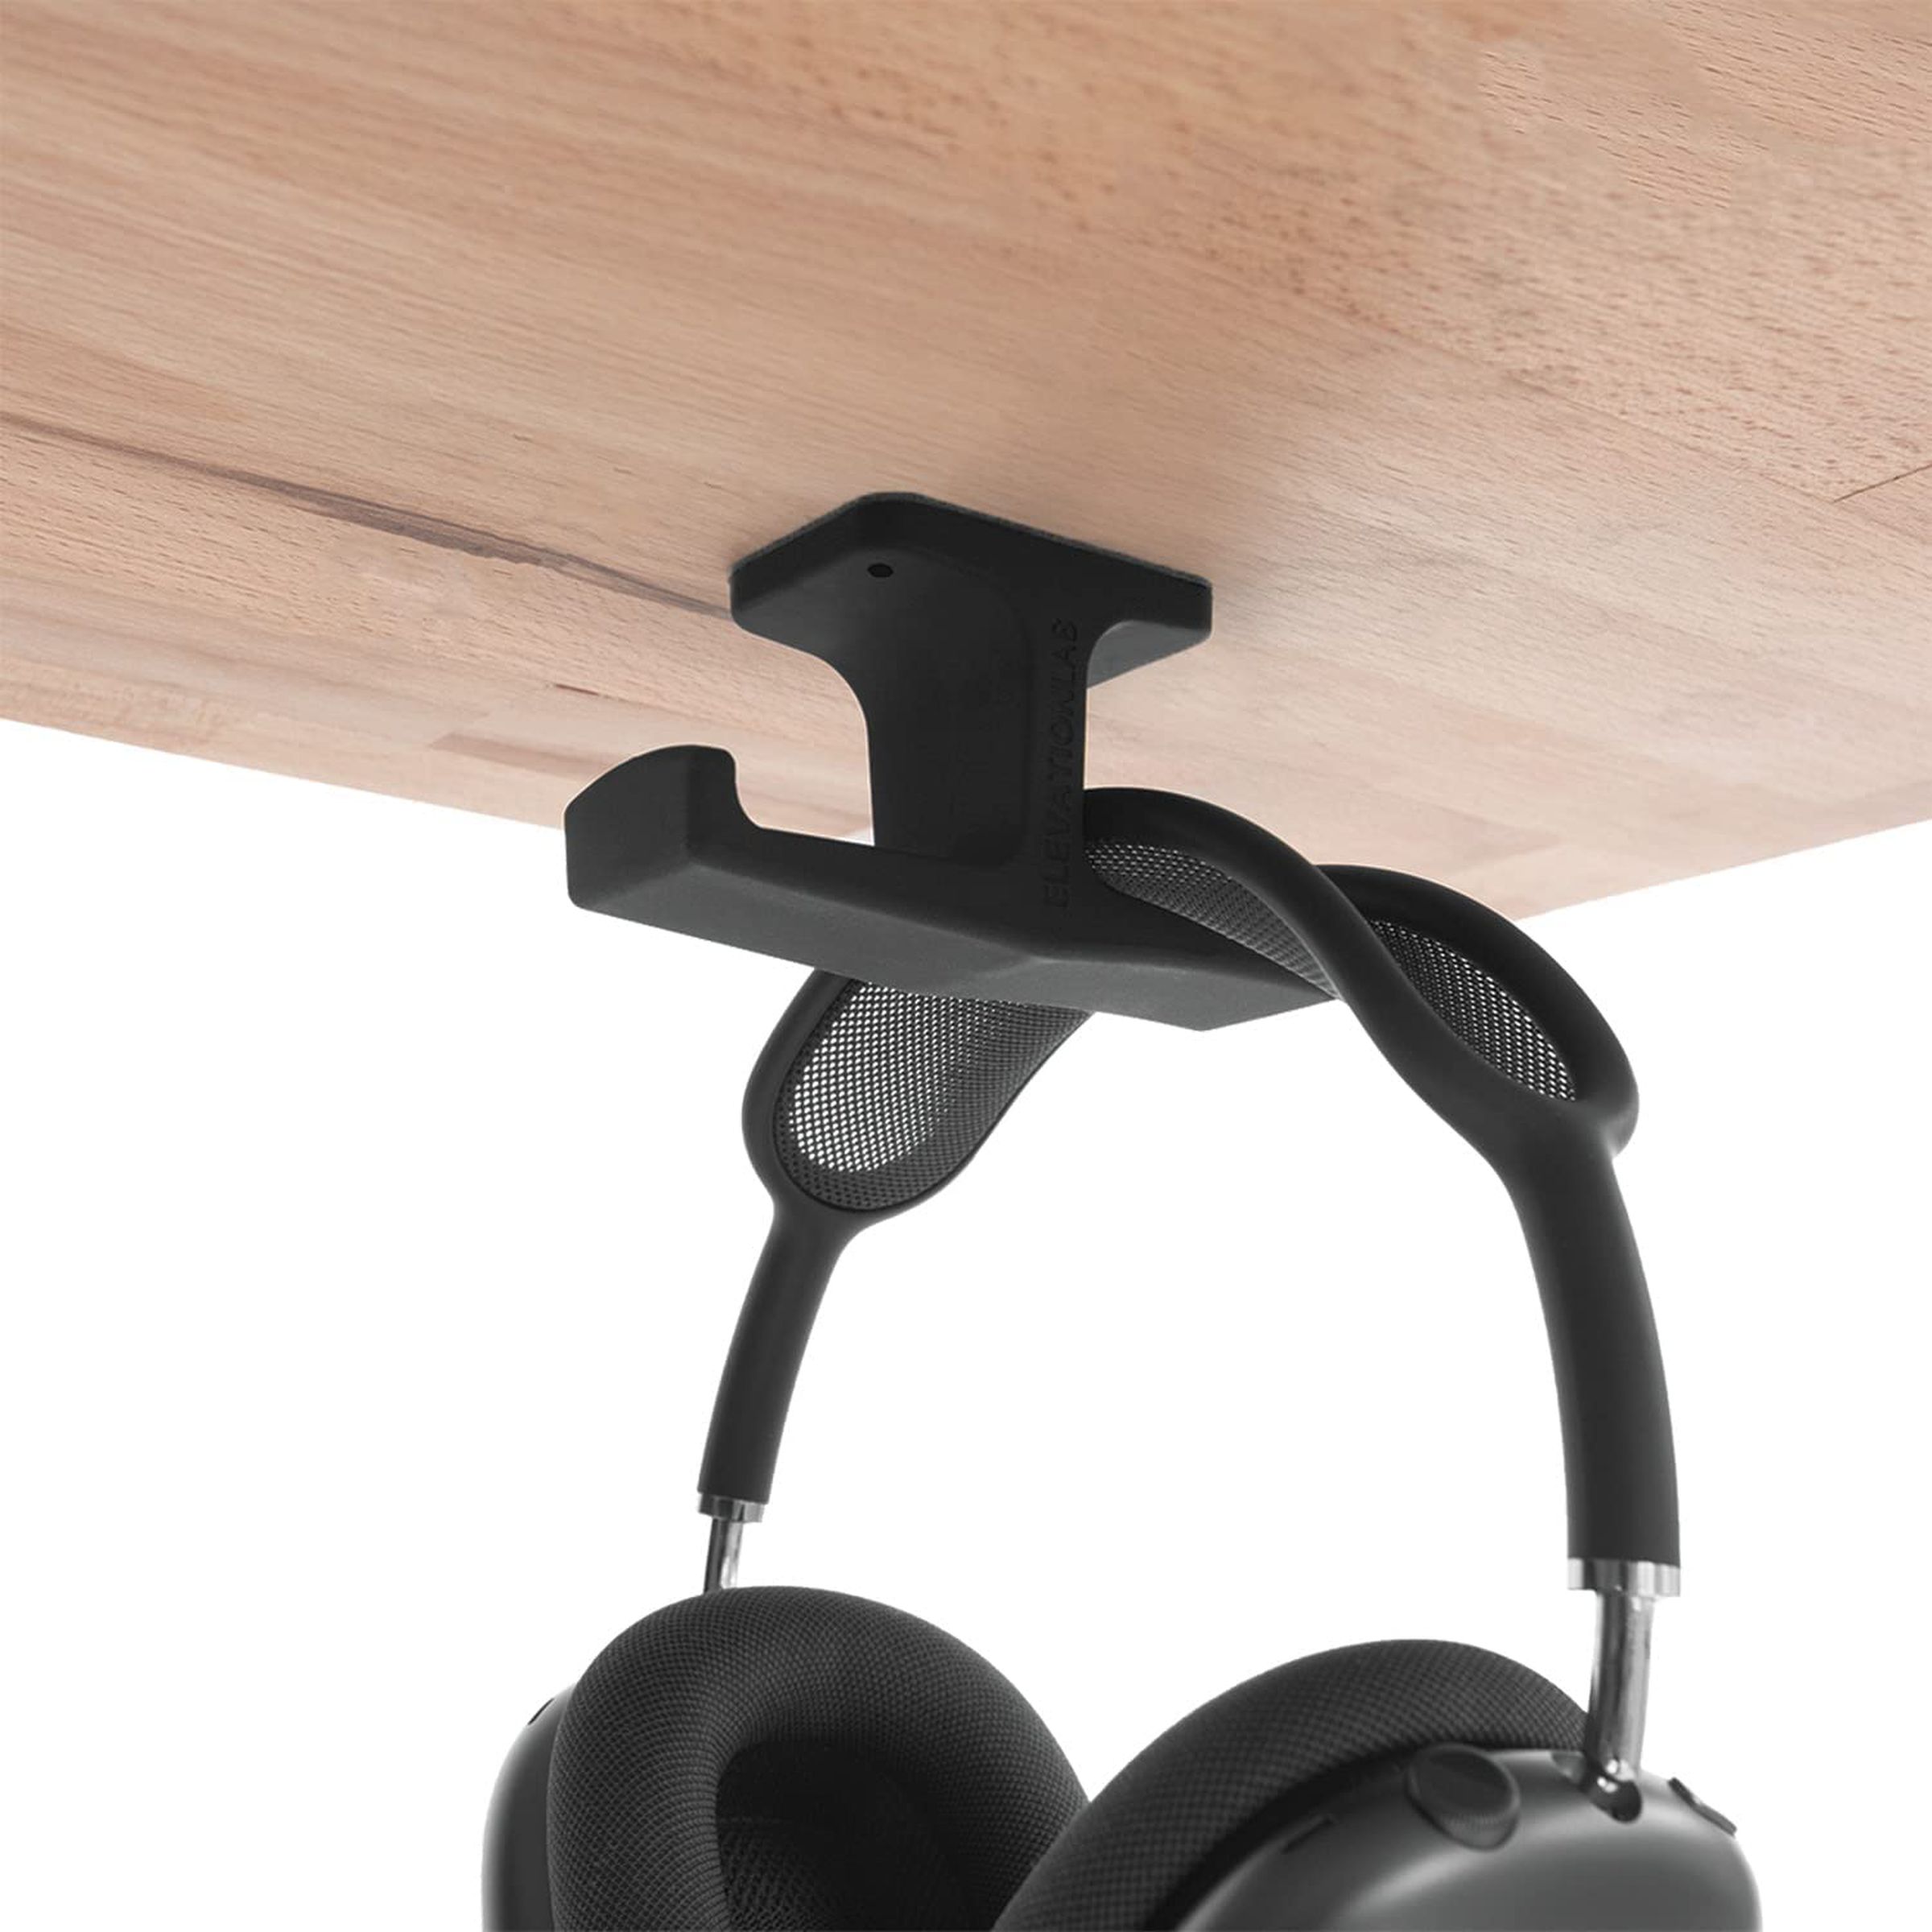 Um gancho duplo preso sob uma mesa que contém um par de fones de ouvido.